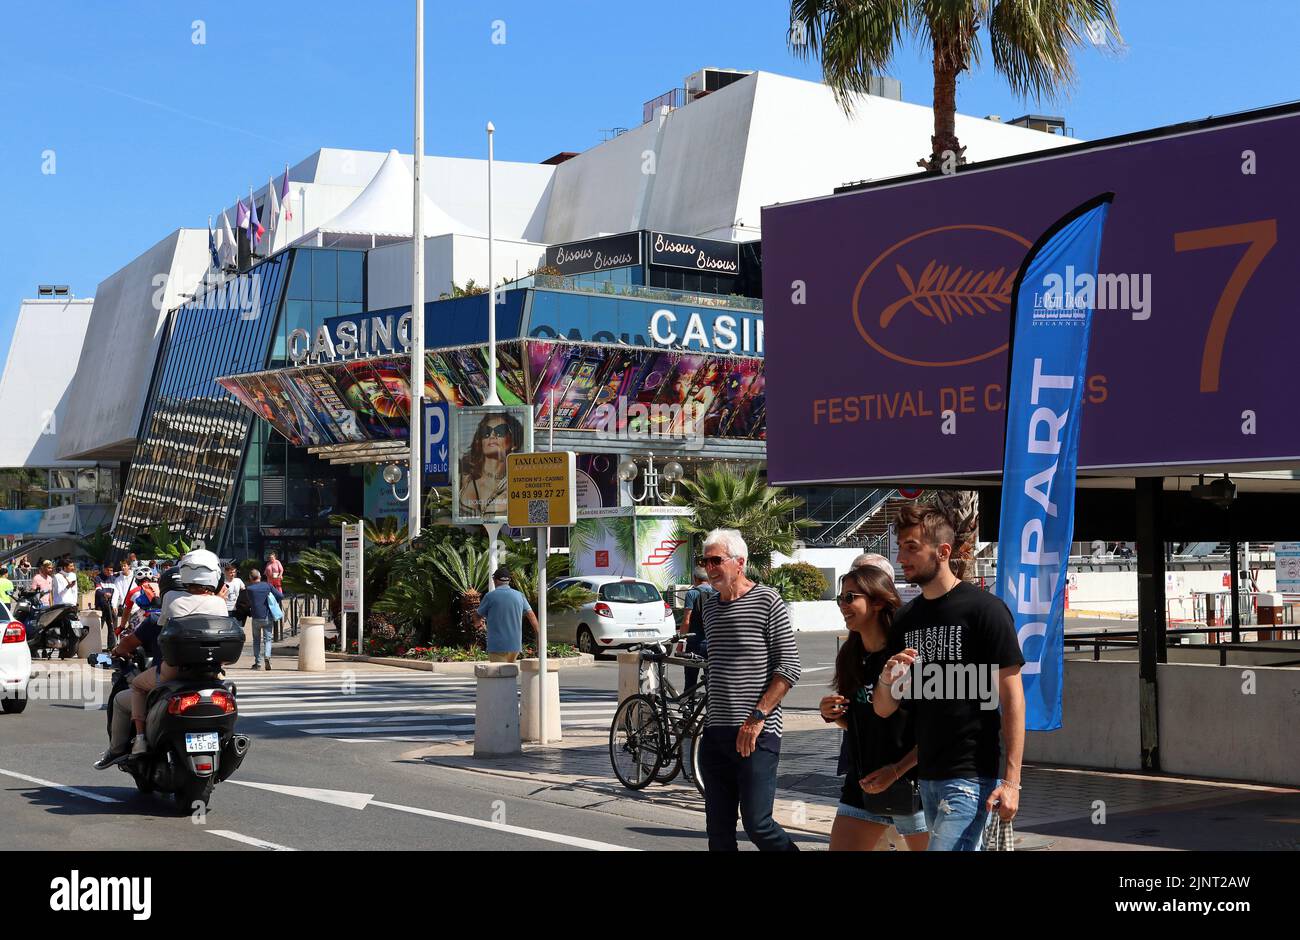 Una strada trafficata sul Boulevard de la Croisette, Cannes, Francia, una settimana prima del 75th° Festival del Cinema, maggio 2022 Foto Stock